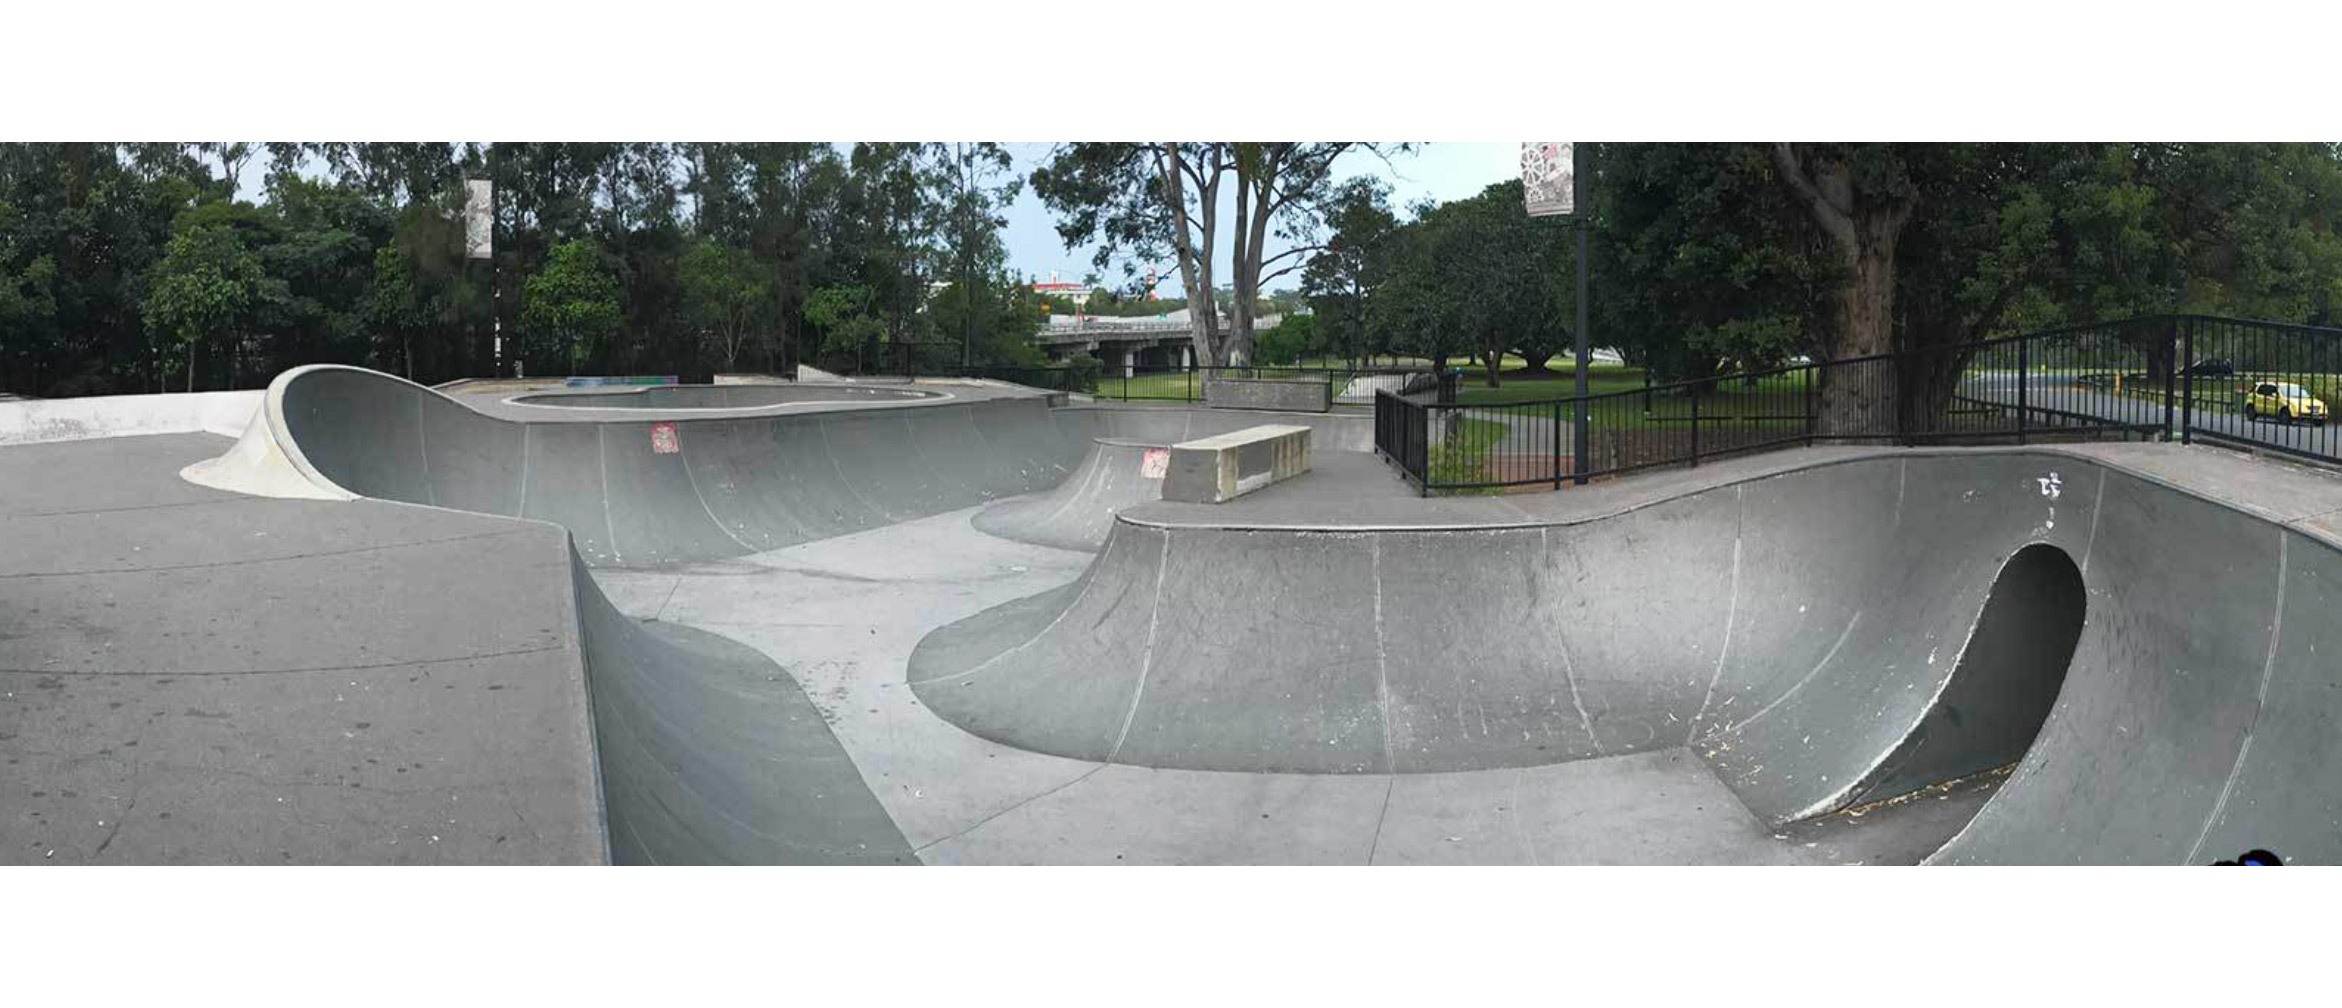 Nerang skate park bowl section